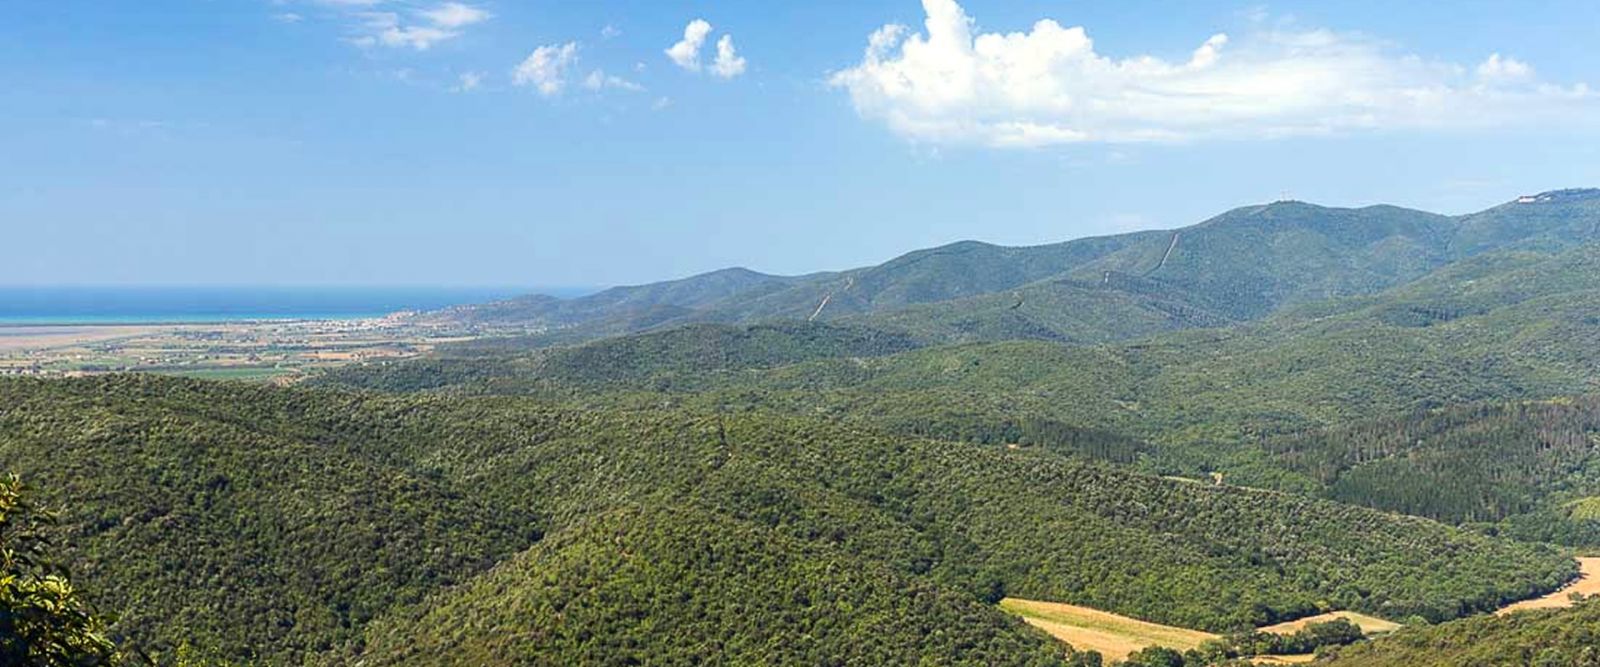 Macchia Mediterranea Hügel Naturschutzgebiet Montioni Toskana